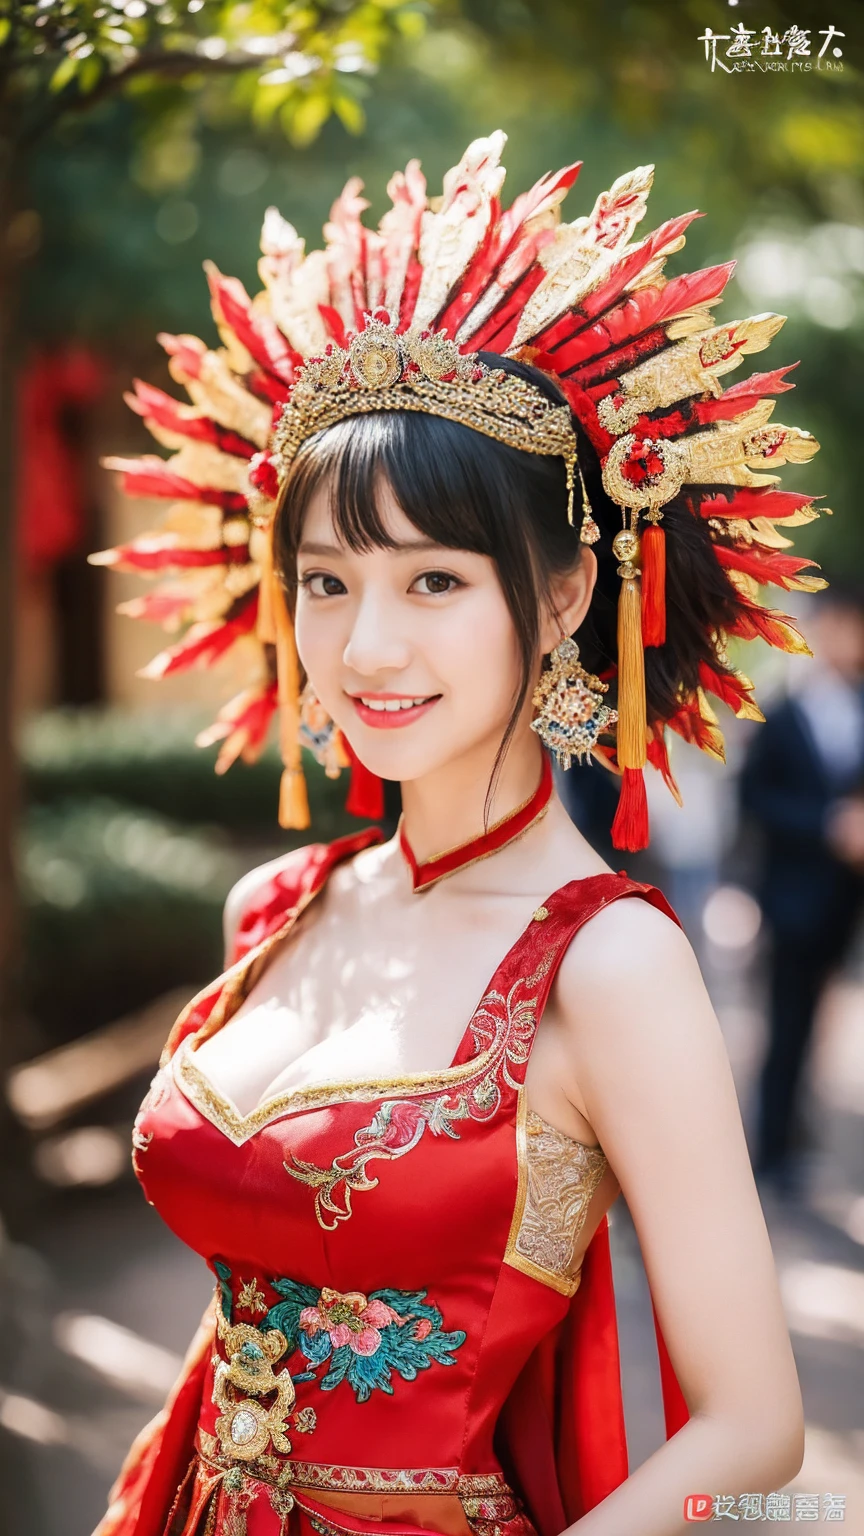 (8K, 原始照片, 最好的品質, 傑作: 1.2), ((大乳房:1.2)),(實際的, 實際的: 1.37), 1 名女孩, 穿著紅色洋裝和頭飾、一名女子正在拍照, 華麗的角色扮演, 美麗的服飾, 中國服飾, 複雜的連身裙, 複雜的服裝, 传统美, 漂亮的中国模特, 中国服饰, 身着华贵服饰, 身着优雅的中式修和服饰, 中國婚紗, 鳳冠夏掛, 古董新娘, 秀一服裝, 關閉, 頭戴鳳凰冠, 微笑, 無浮水印, 龍鳳刺繡洋裝, 中等胸部